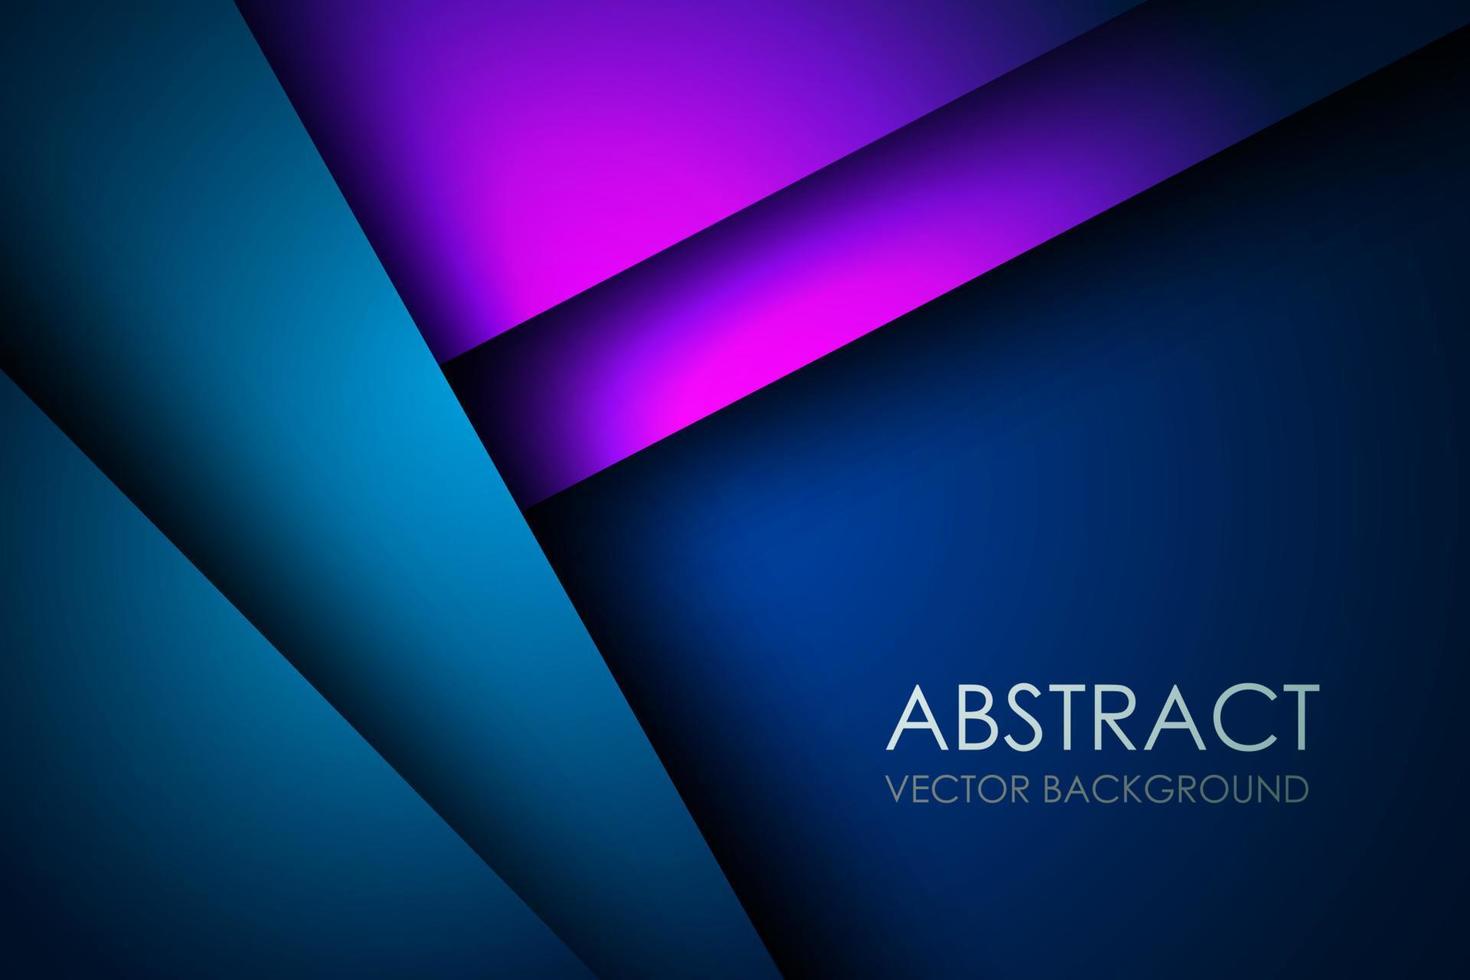 abstracte donker blauw paars overlappende lagen driehoek op lege ruimte achtergrond eps10 vector